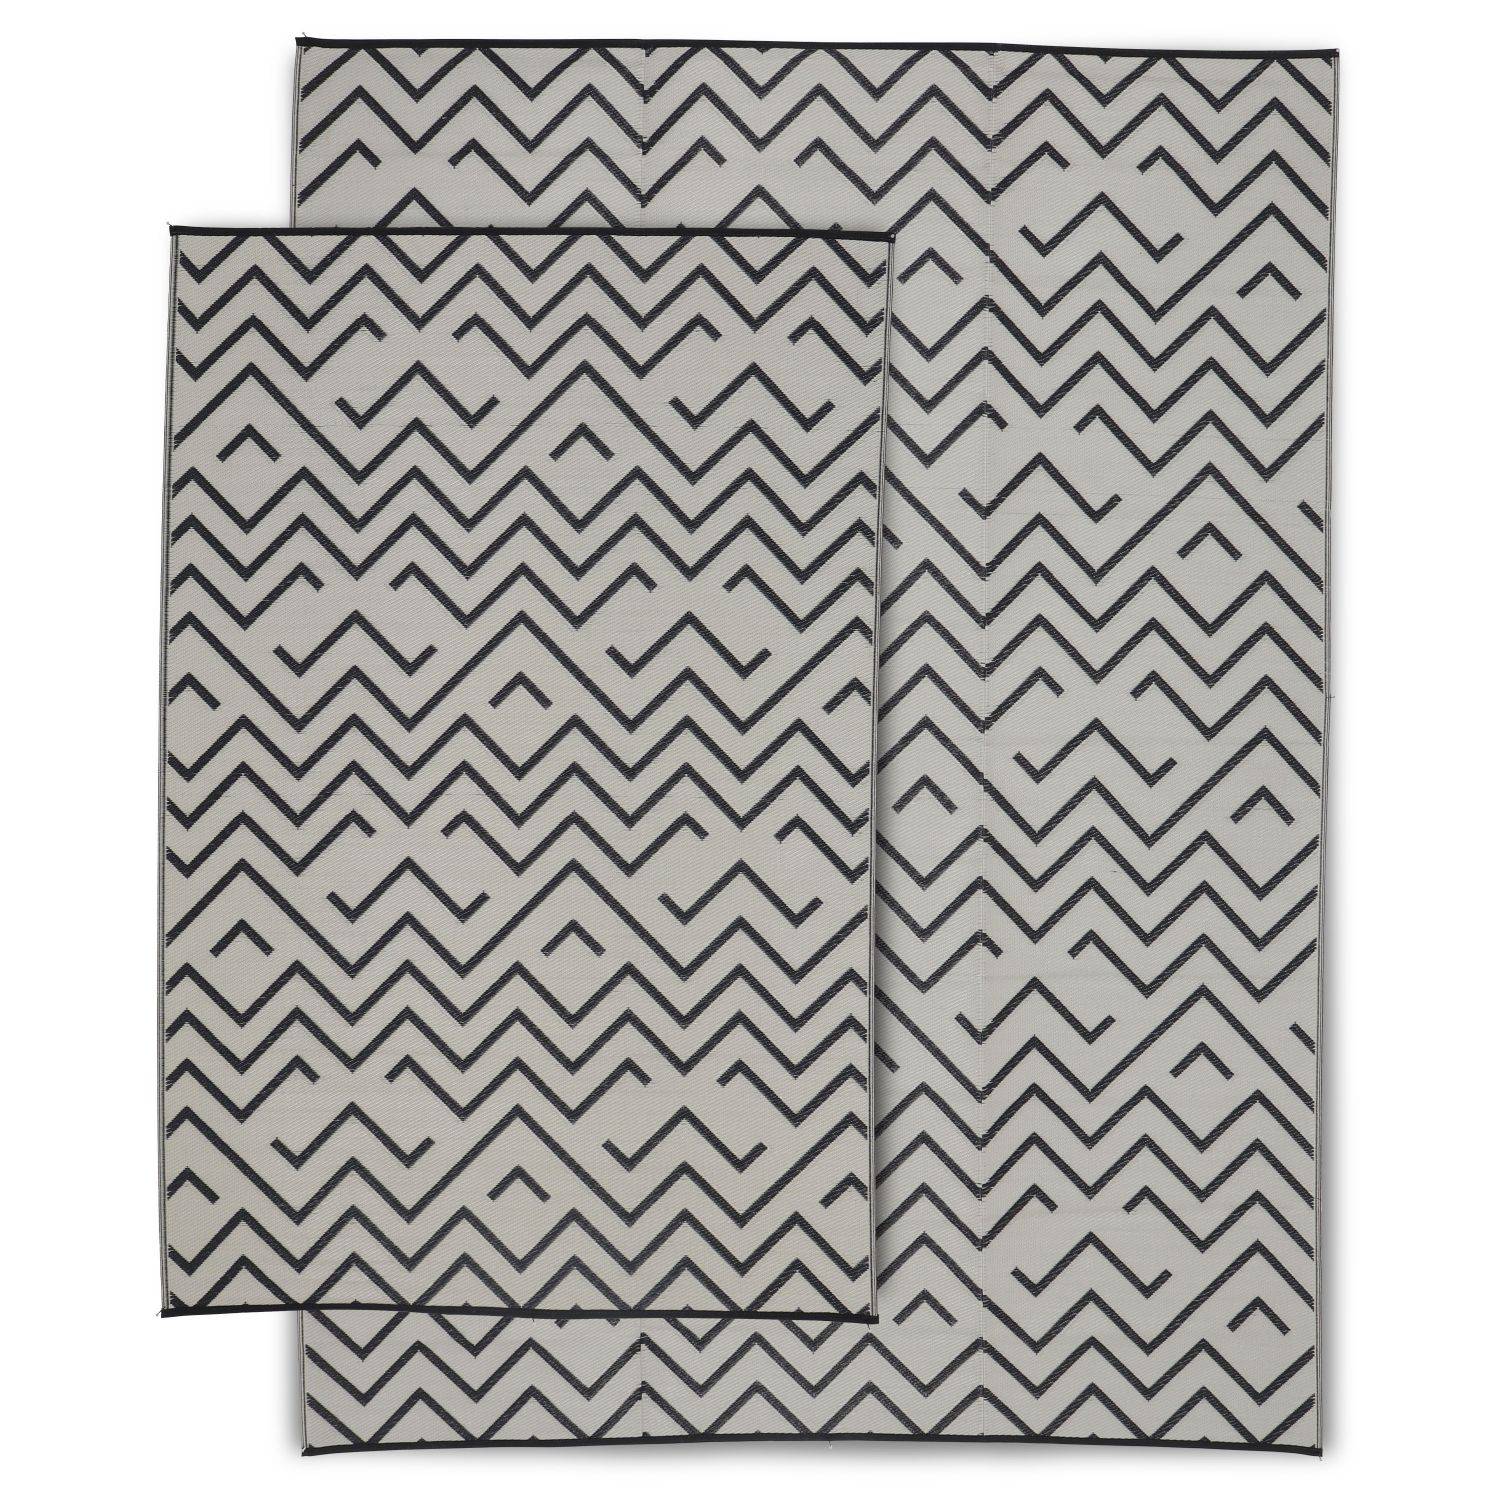 Outdoor Teppich 270 x 360 cm SYDNEY - Rechteckig, Wellenmuster schwarz / beige, Jacquard, wendbar, innen / außen,sweeek,Photo5